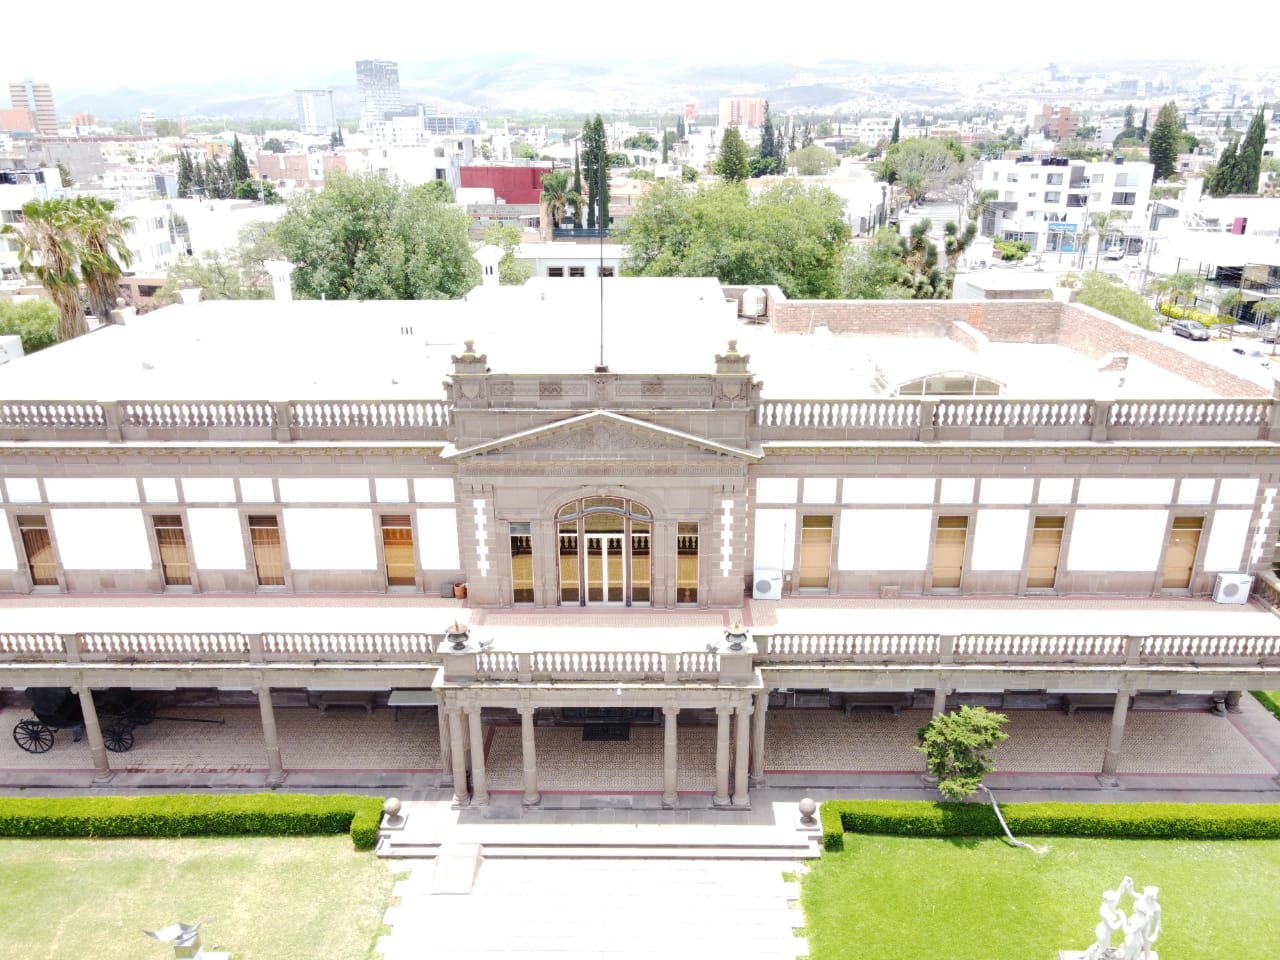 Arquitectura y acervo del museo Francisco Cossío son declaradas patrimonio cultural